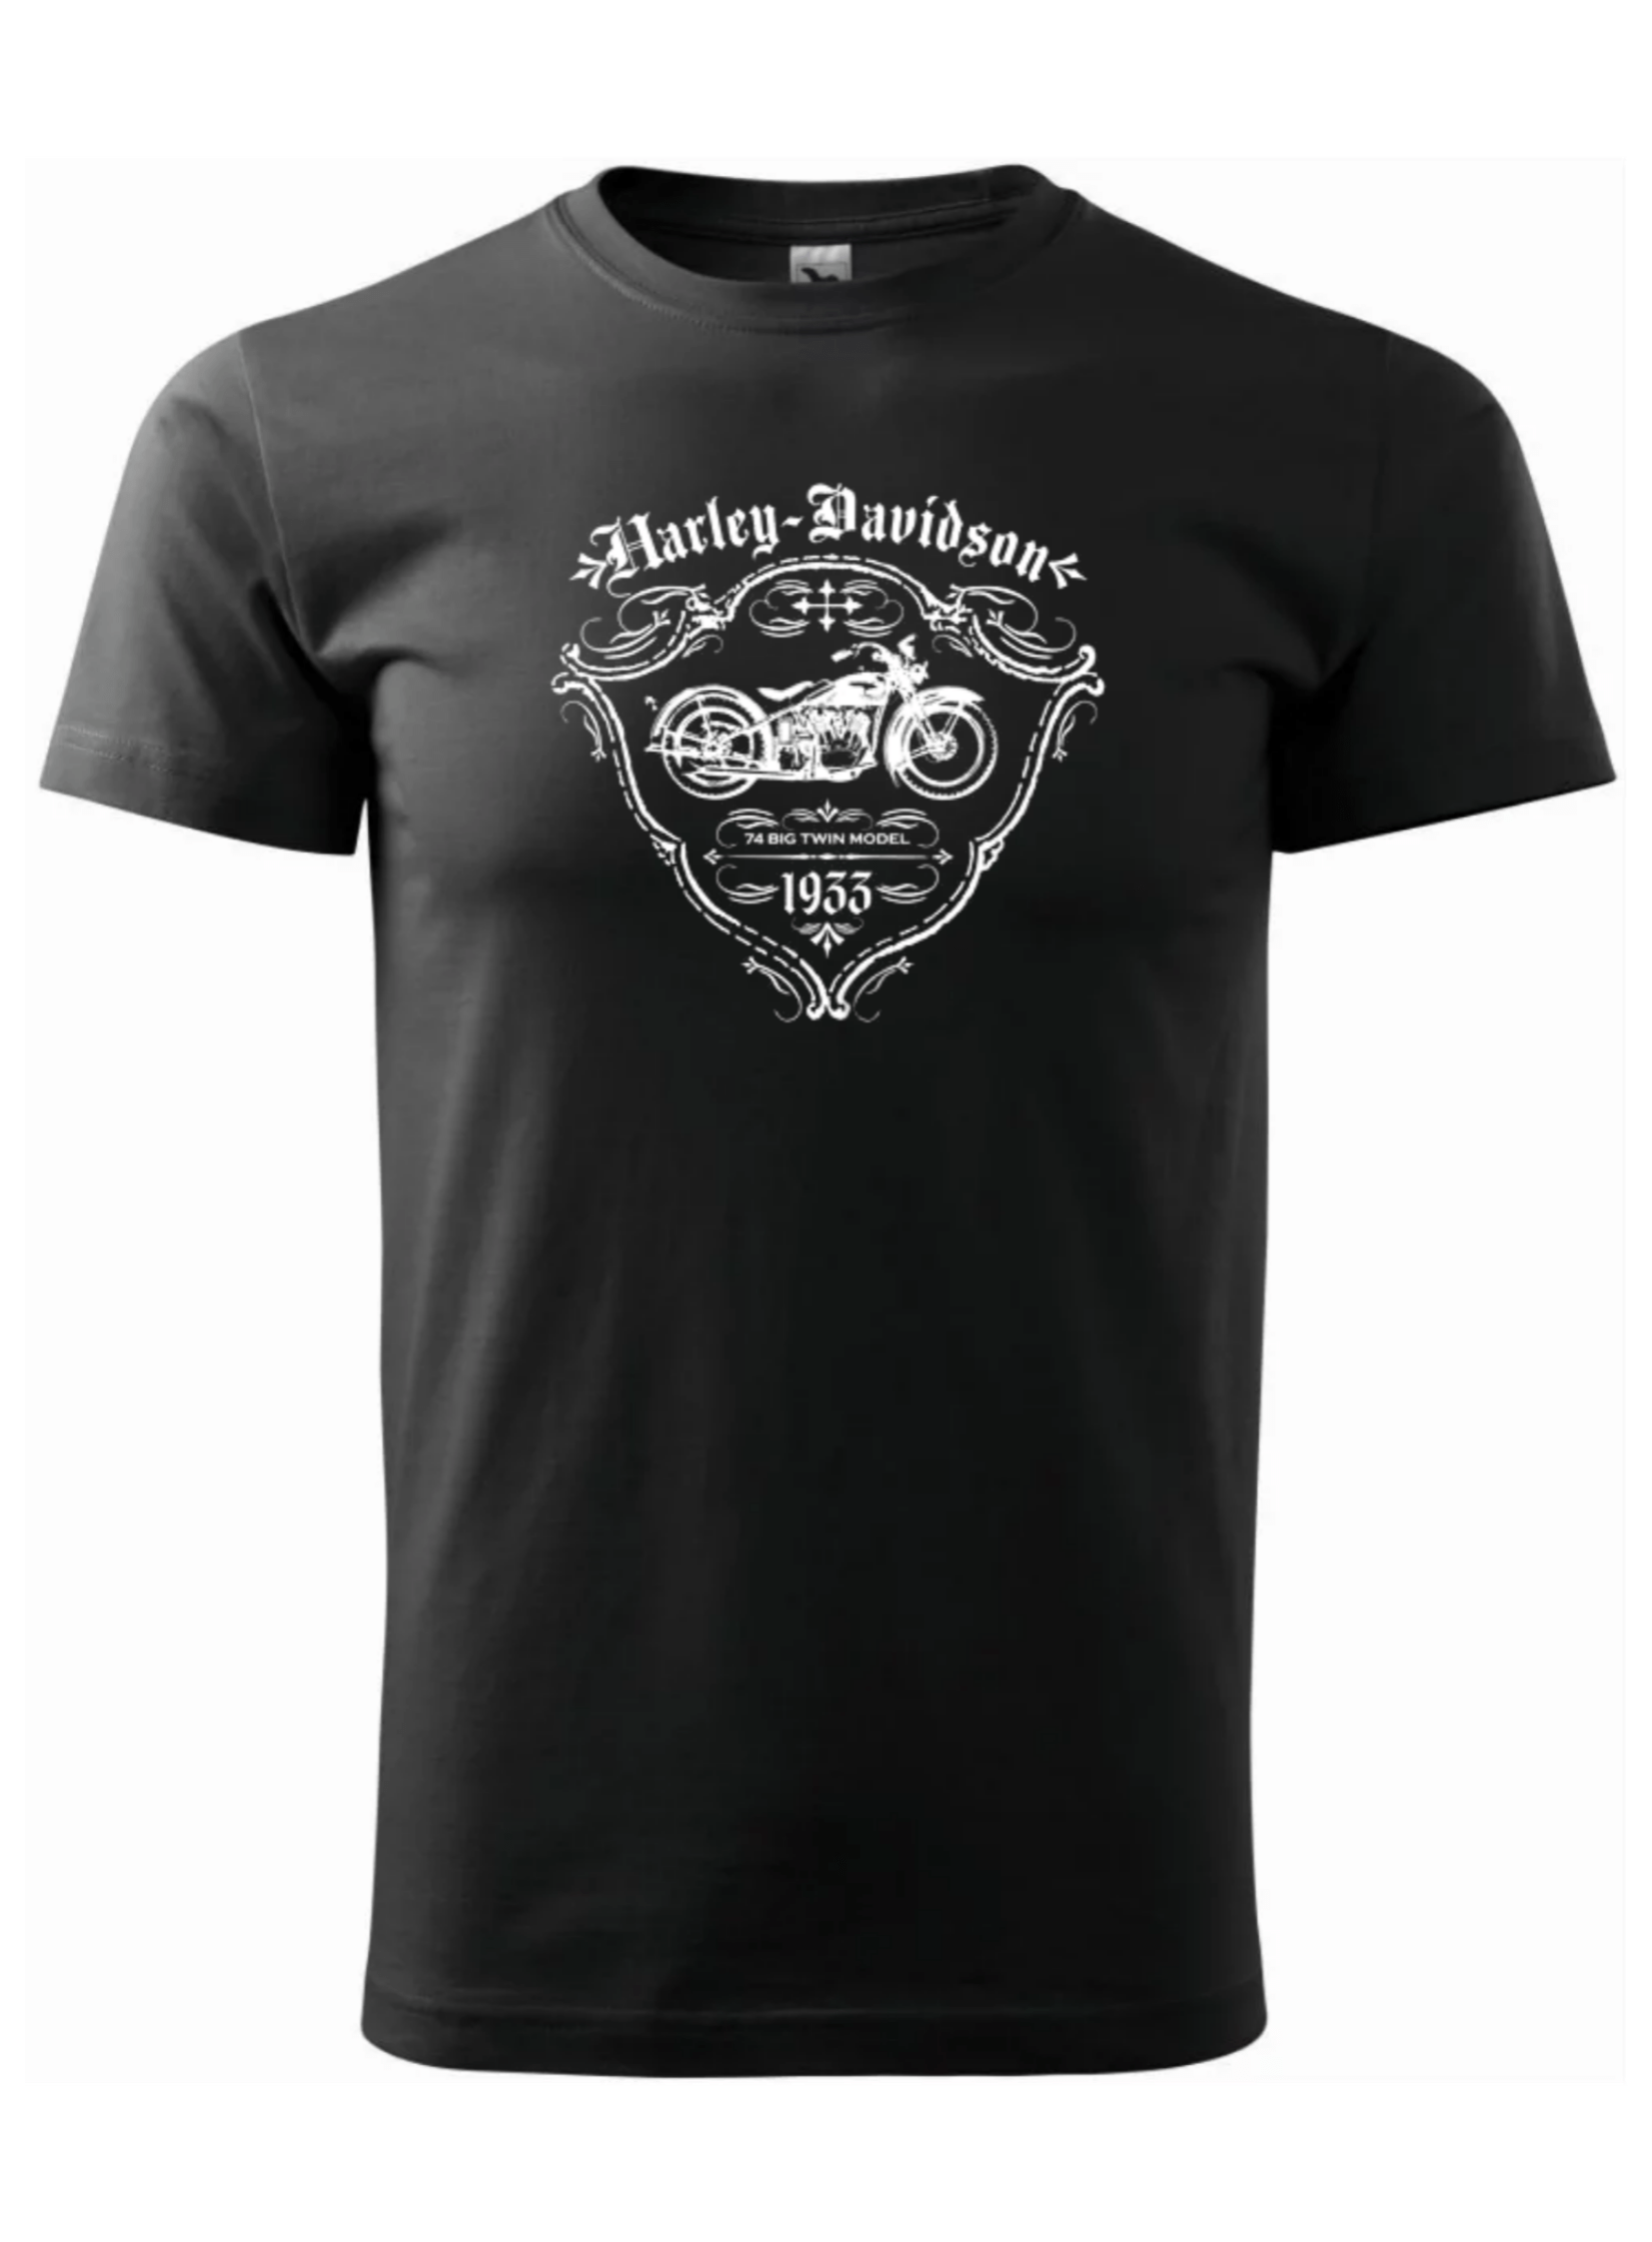 Pánské tričko s potiskem značky Harley Davidson 34